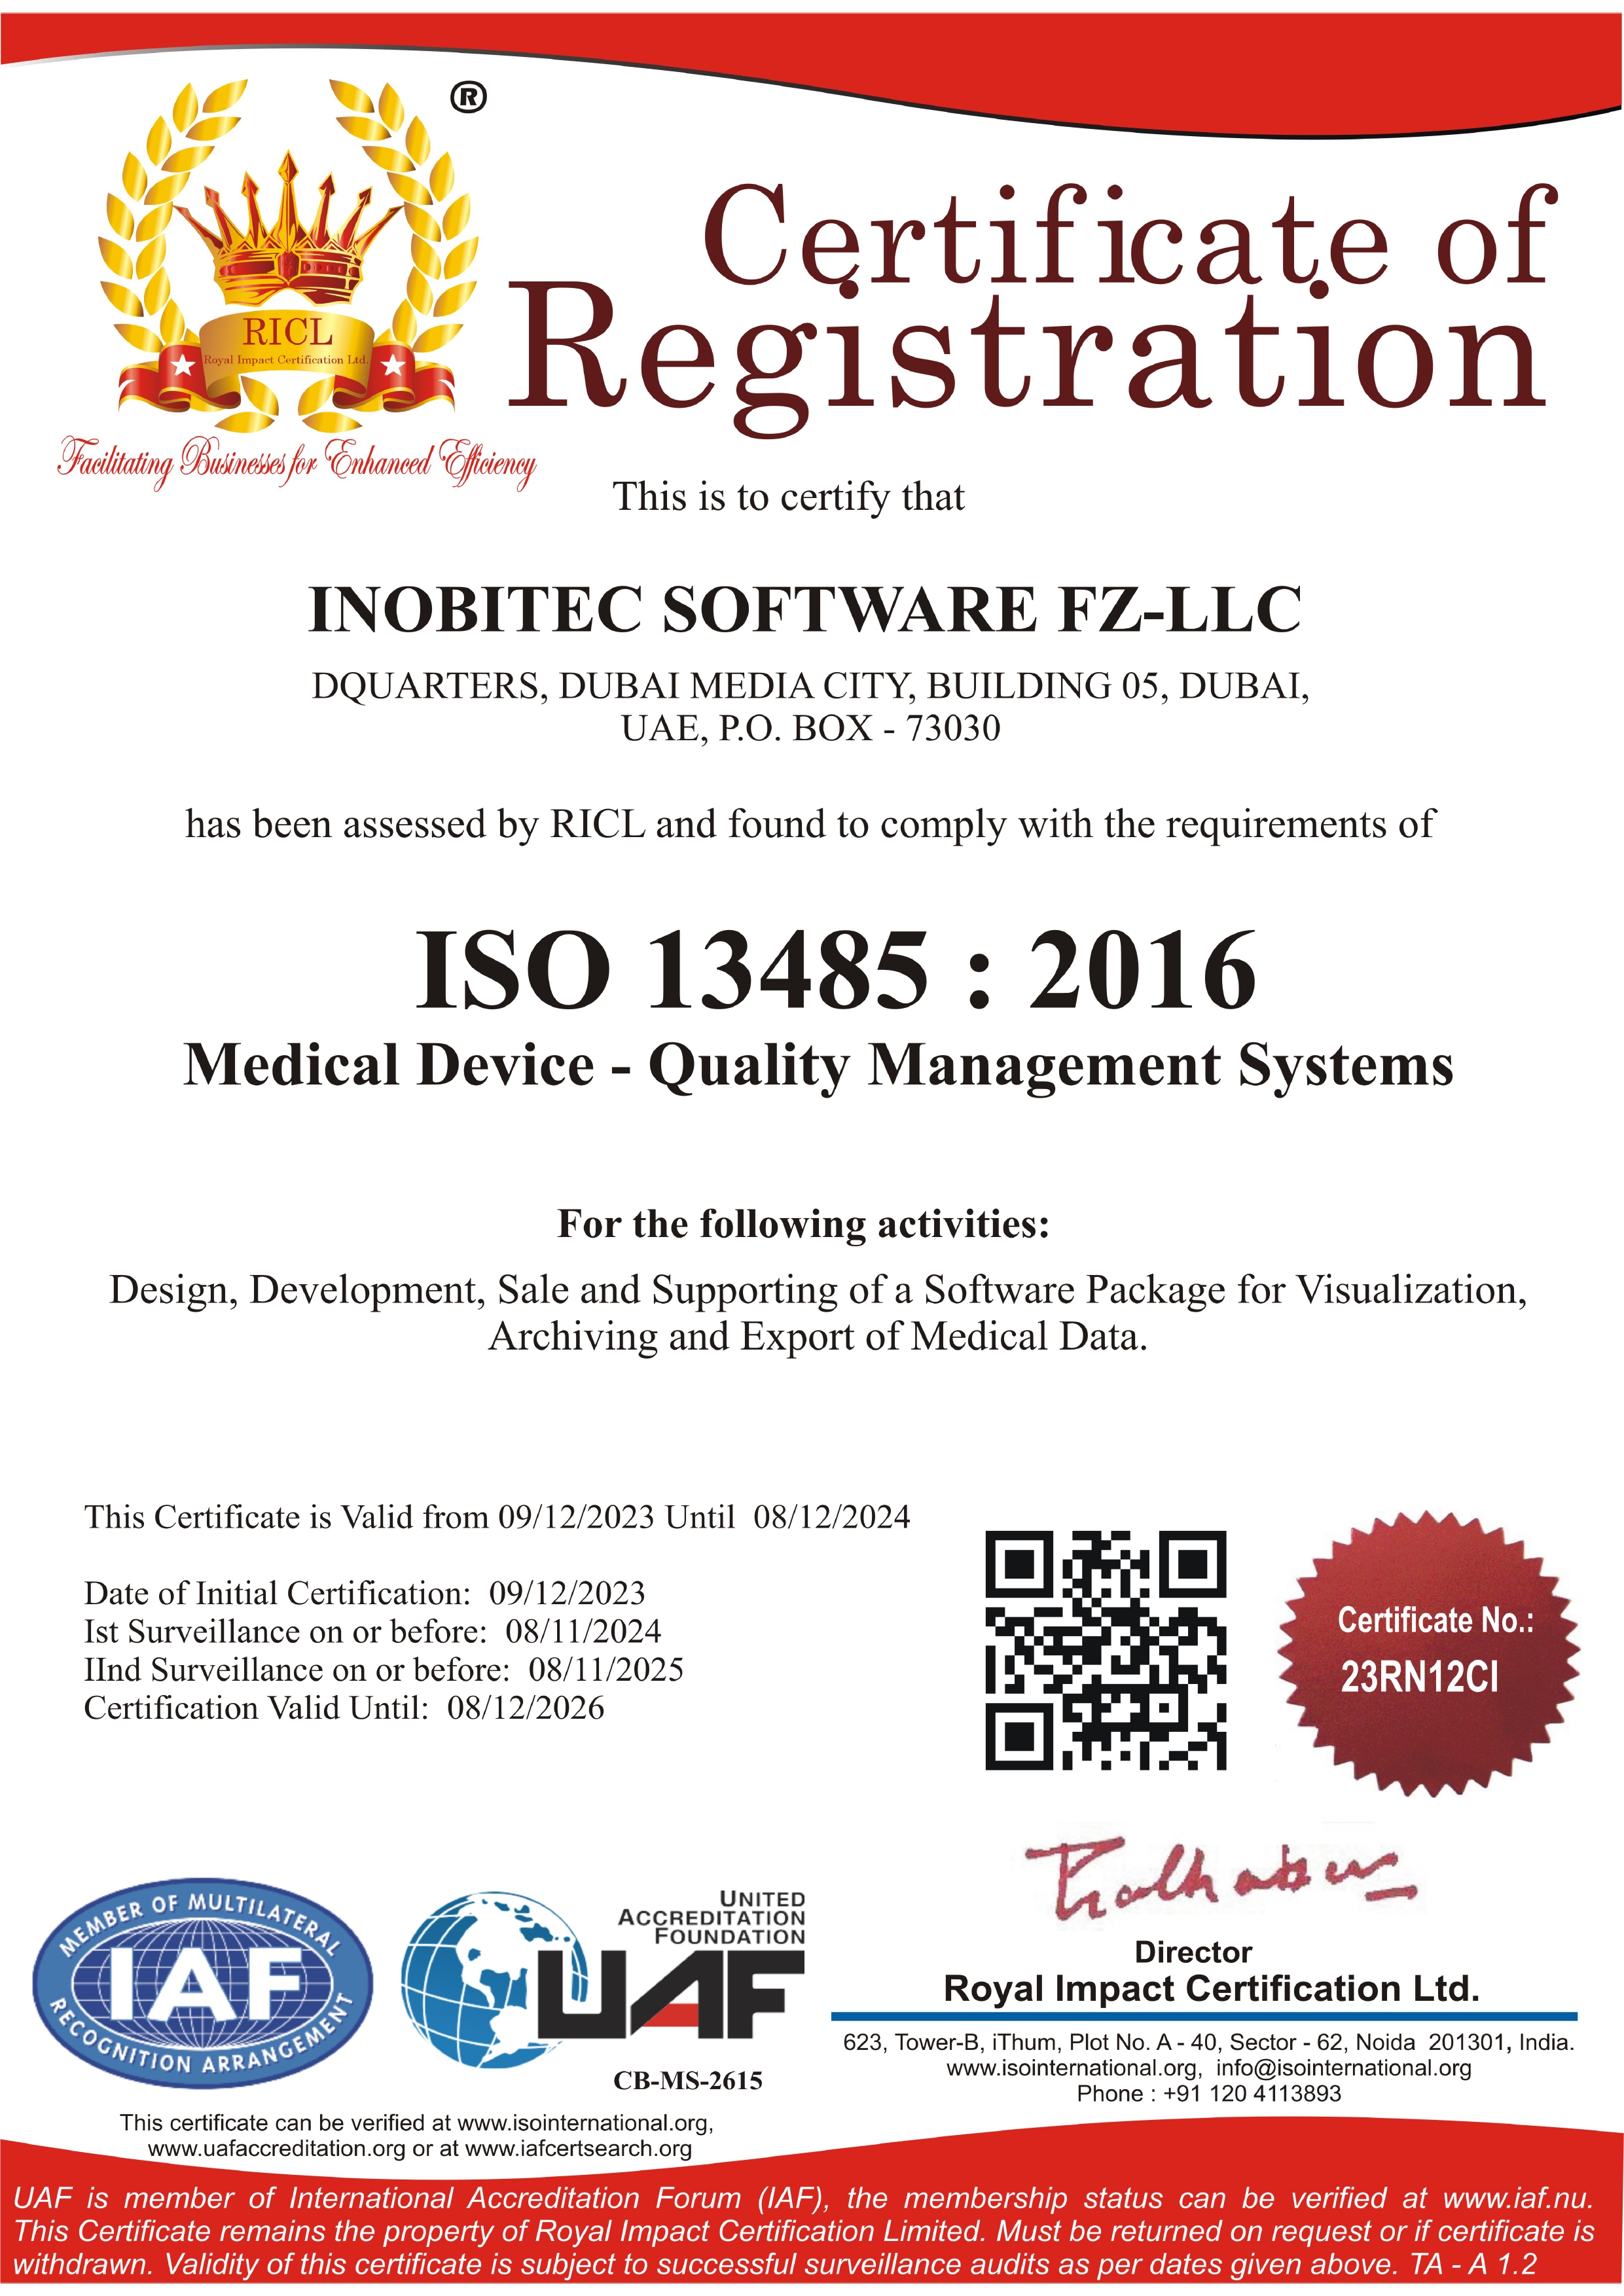 Certificado de conformidad con el sistema de gestión de calidad EN ISO 13485:2016